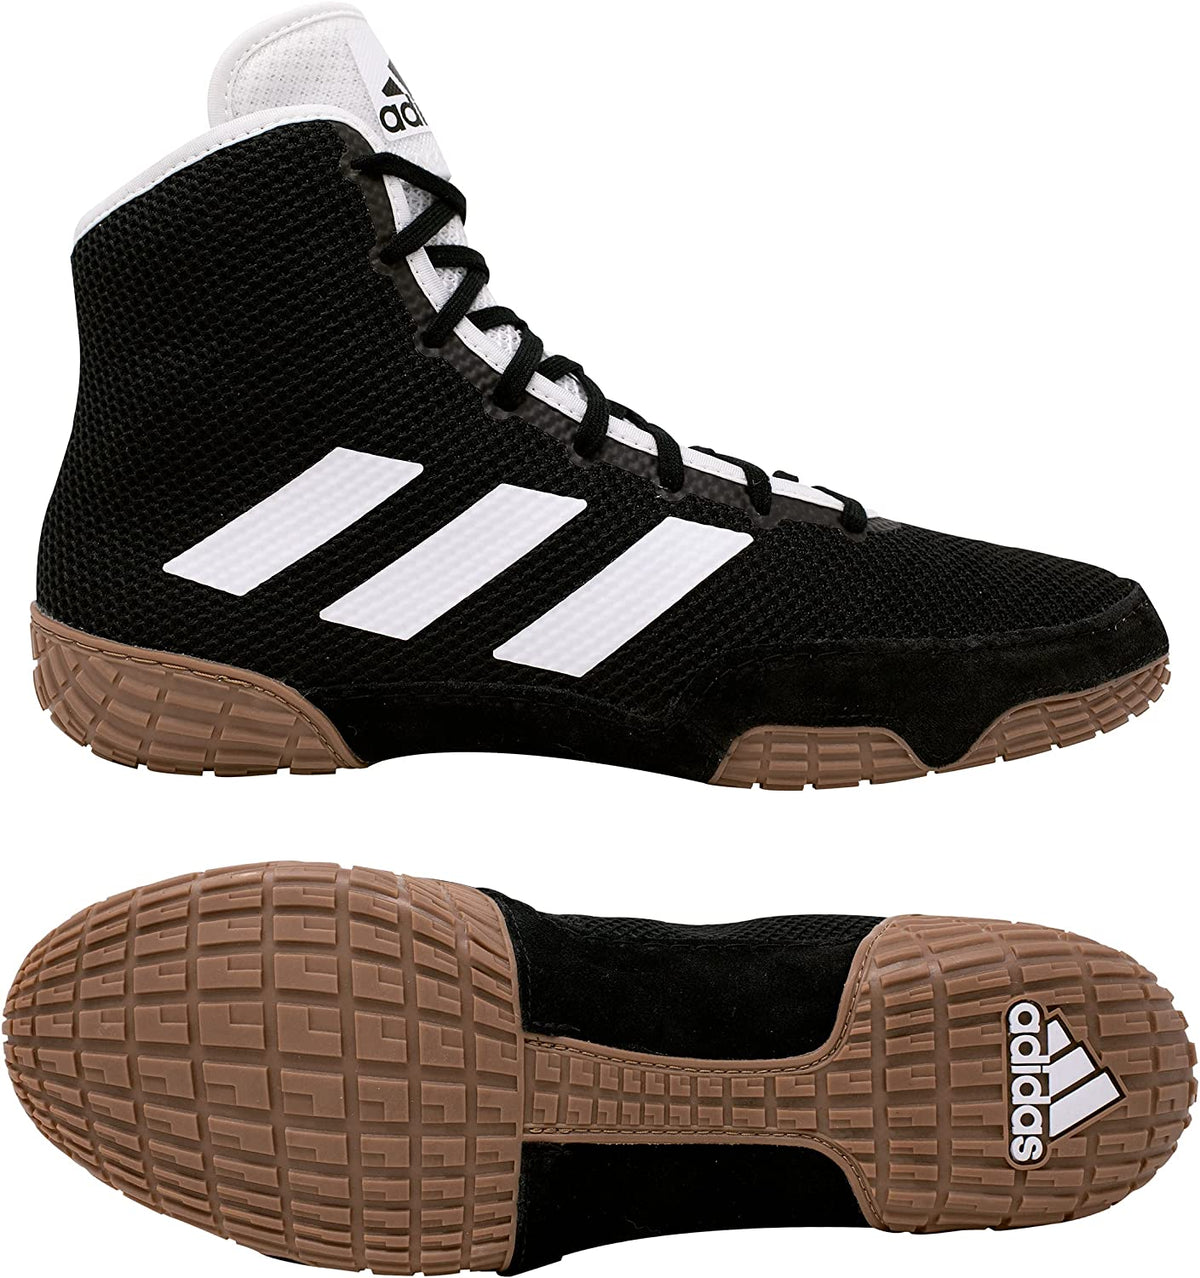 Les chaussures de lutte Adidas Tech-Fall de couleur noire. Maintenant au meilleur prix chez Phantom Athletics . Les chaussures de lutte Adidas sont parmi les chaussures les plus recherchées parmi les lutteurs du monde entier car elles offrent une qualité supérieure associée à un confort ultime. La semelle robuste offre une traction sur le tapis de lutte. 